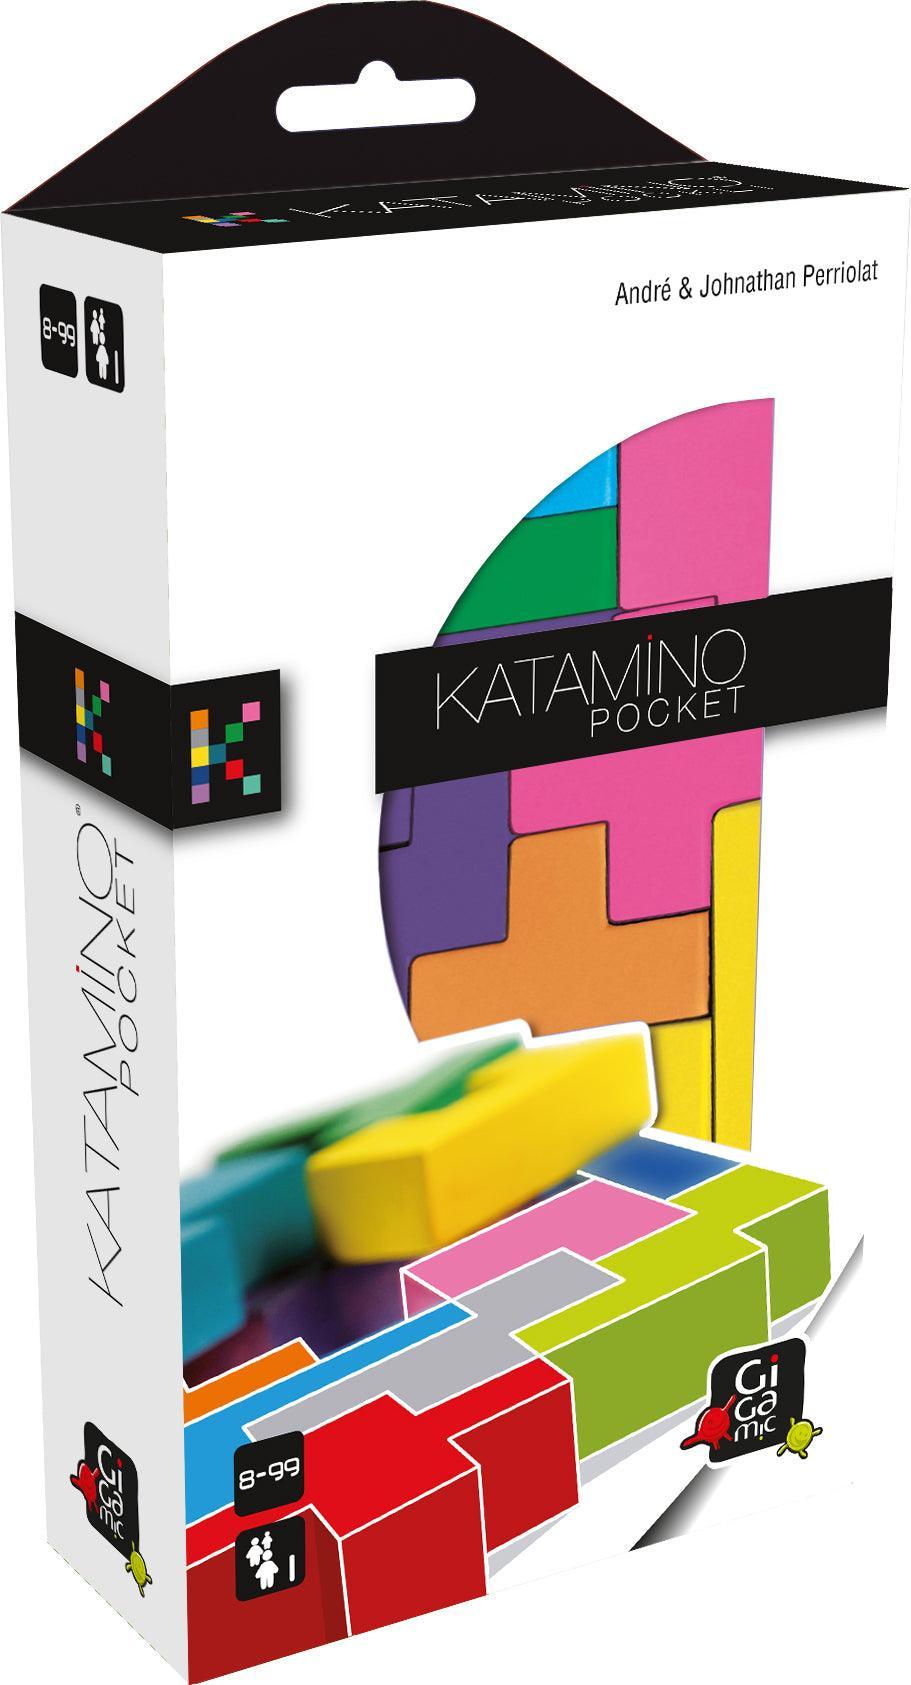 Katamino Pocket - Gaming Library